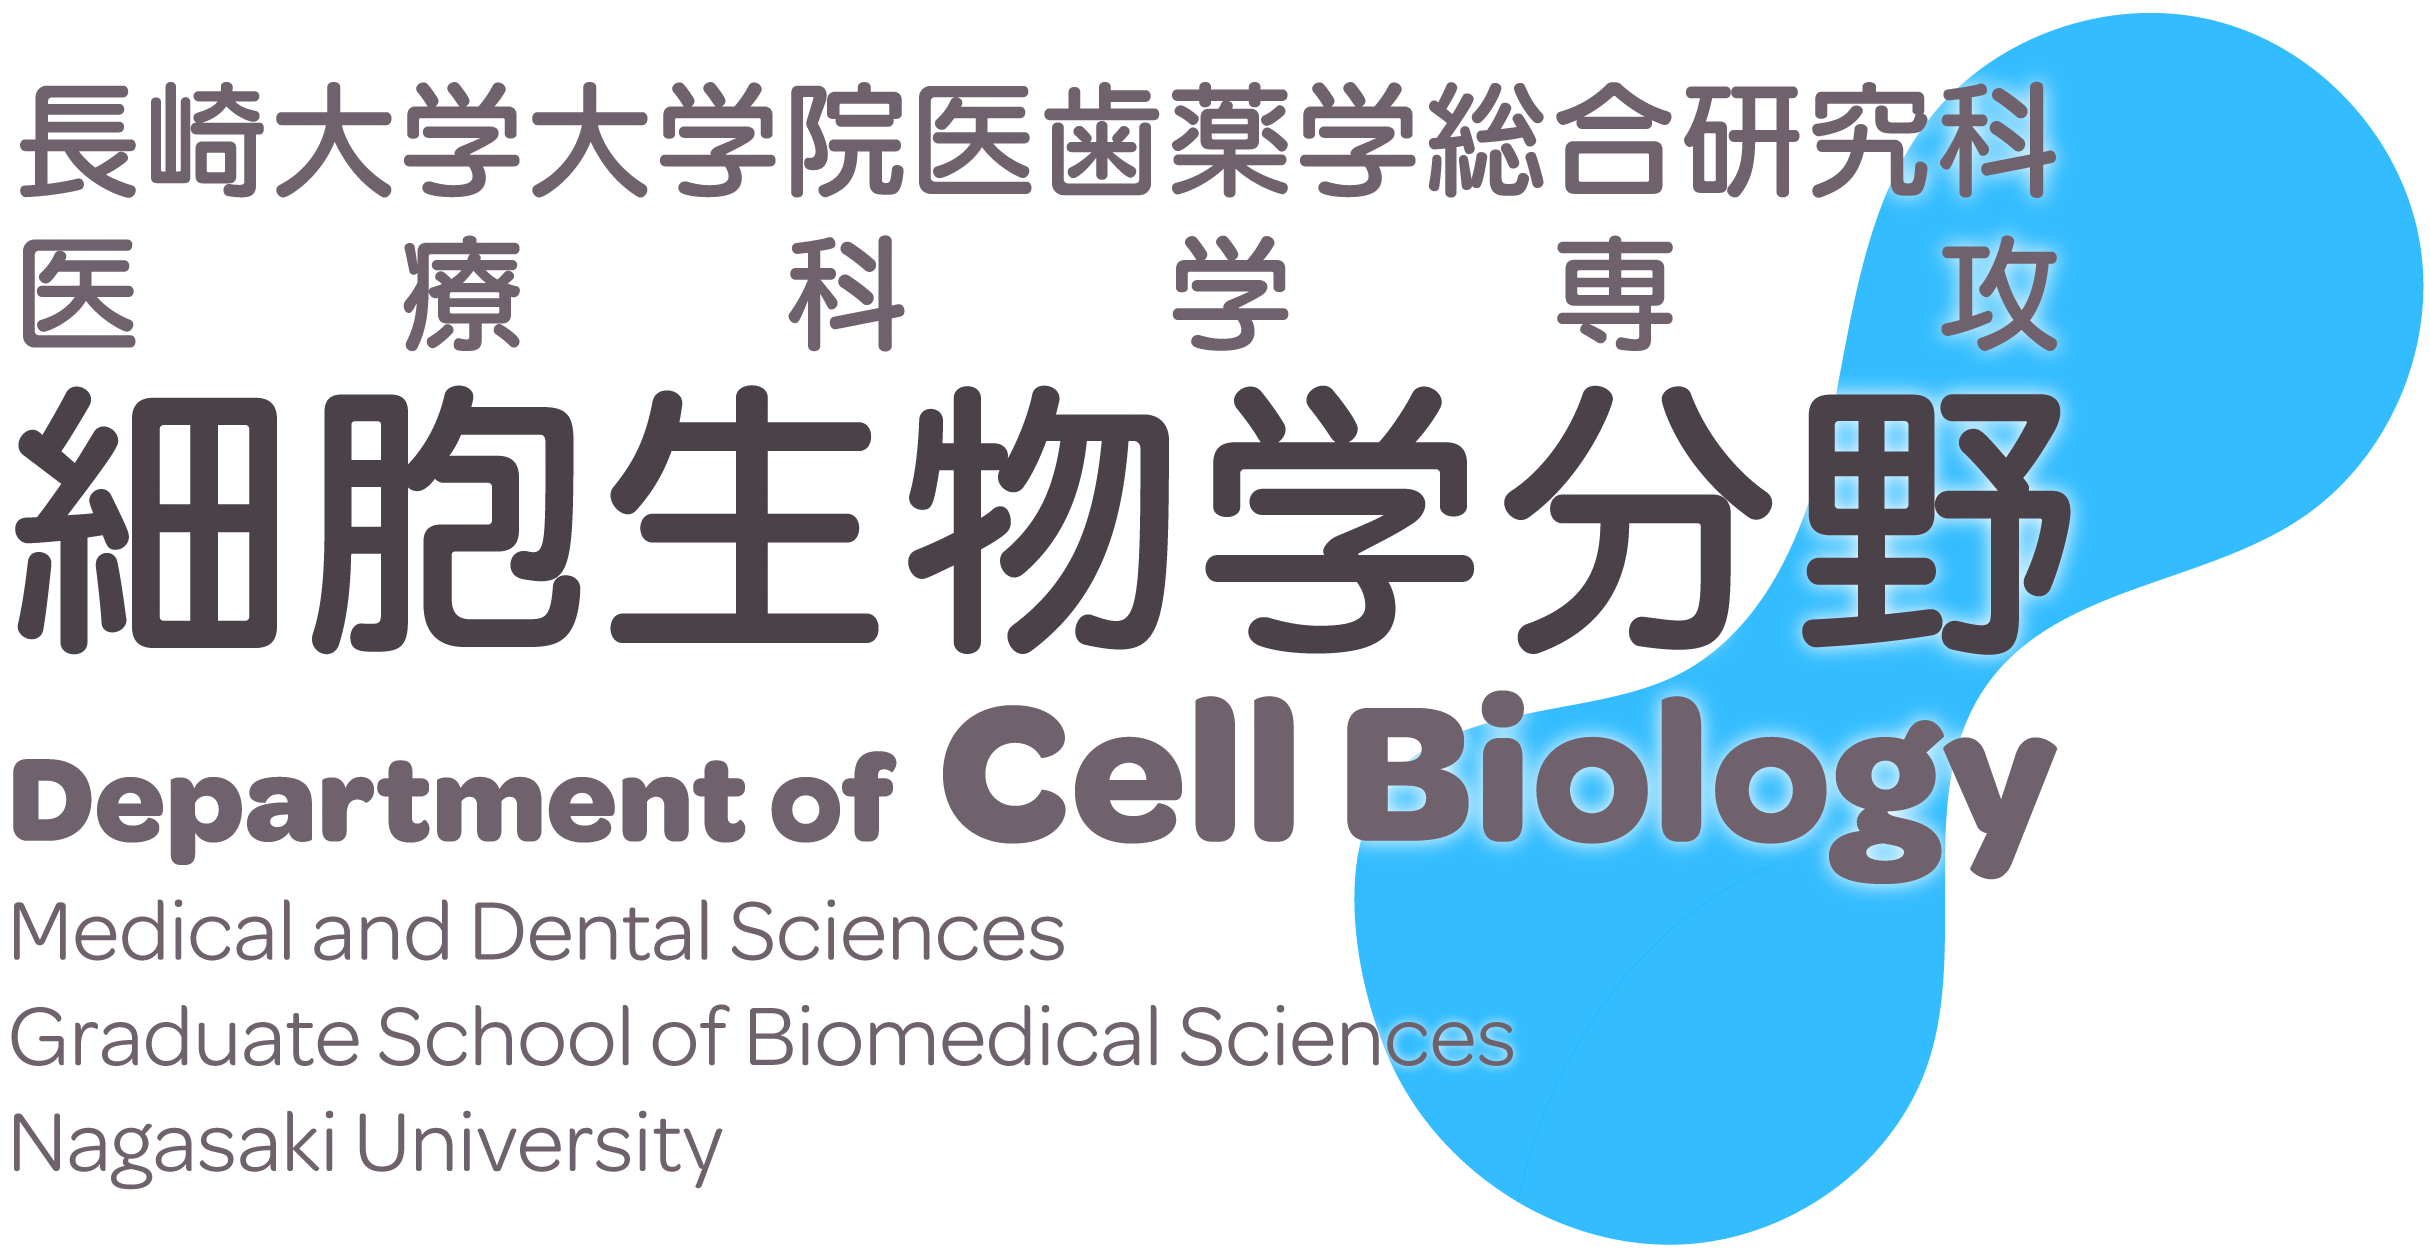 長崎大学大学院医歯薬学総合研究科細胞生物学分野